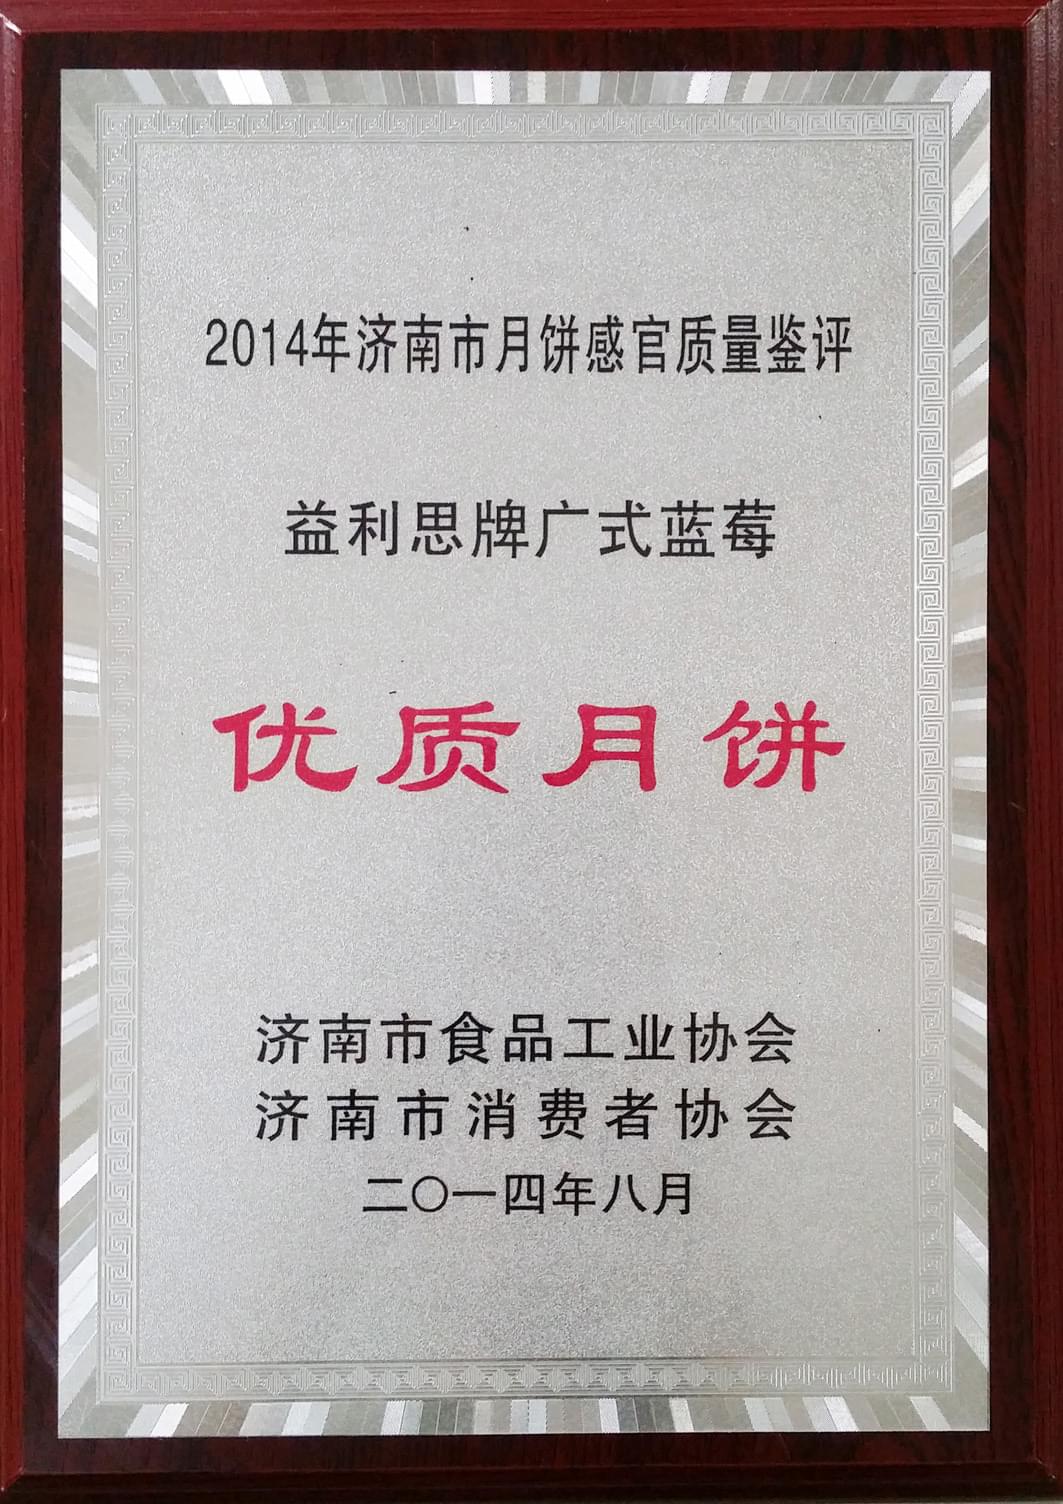 2014年8月益利思牌广式蓝莓被评为“2014年度优质月饼”